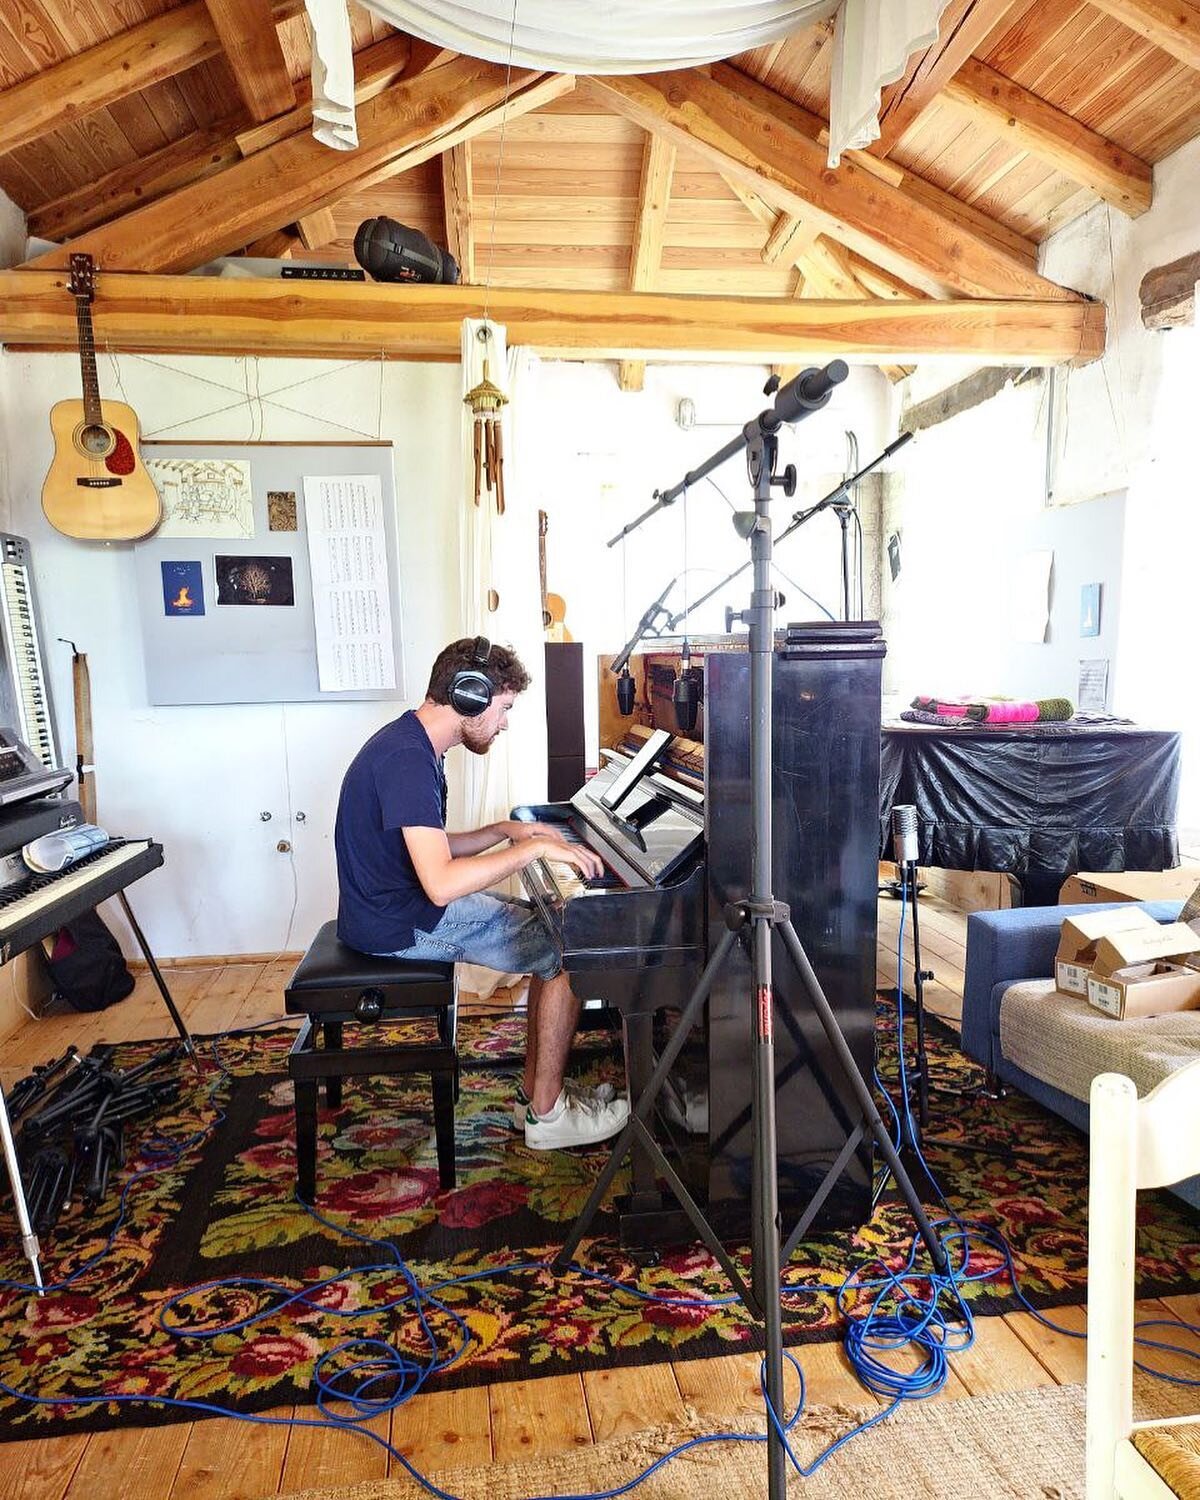 @simone.locarni at the Ursa Major Recording Studio ✨

#recordingstudio #ursamajorecordingstudio #simonelocarni